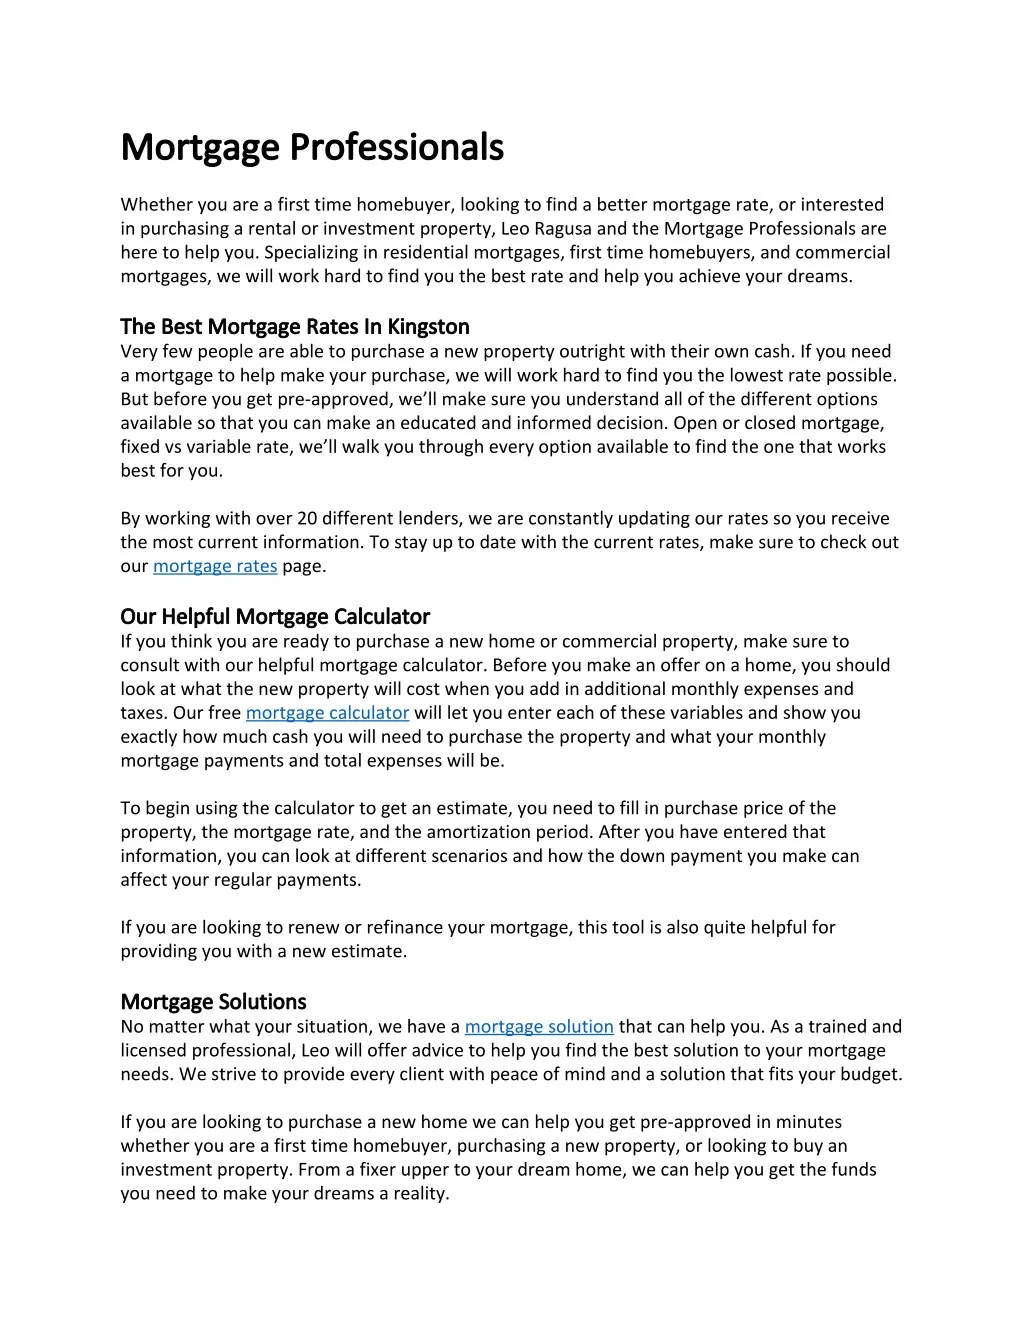 mortgage mortgage professionals professionals